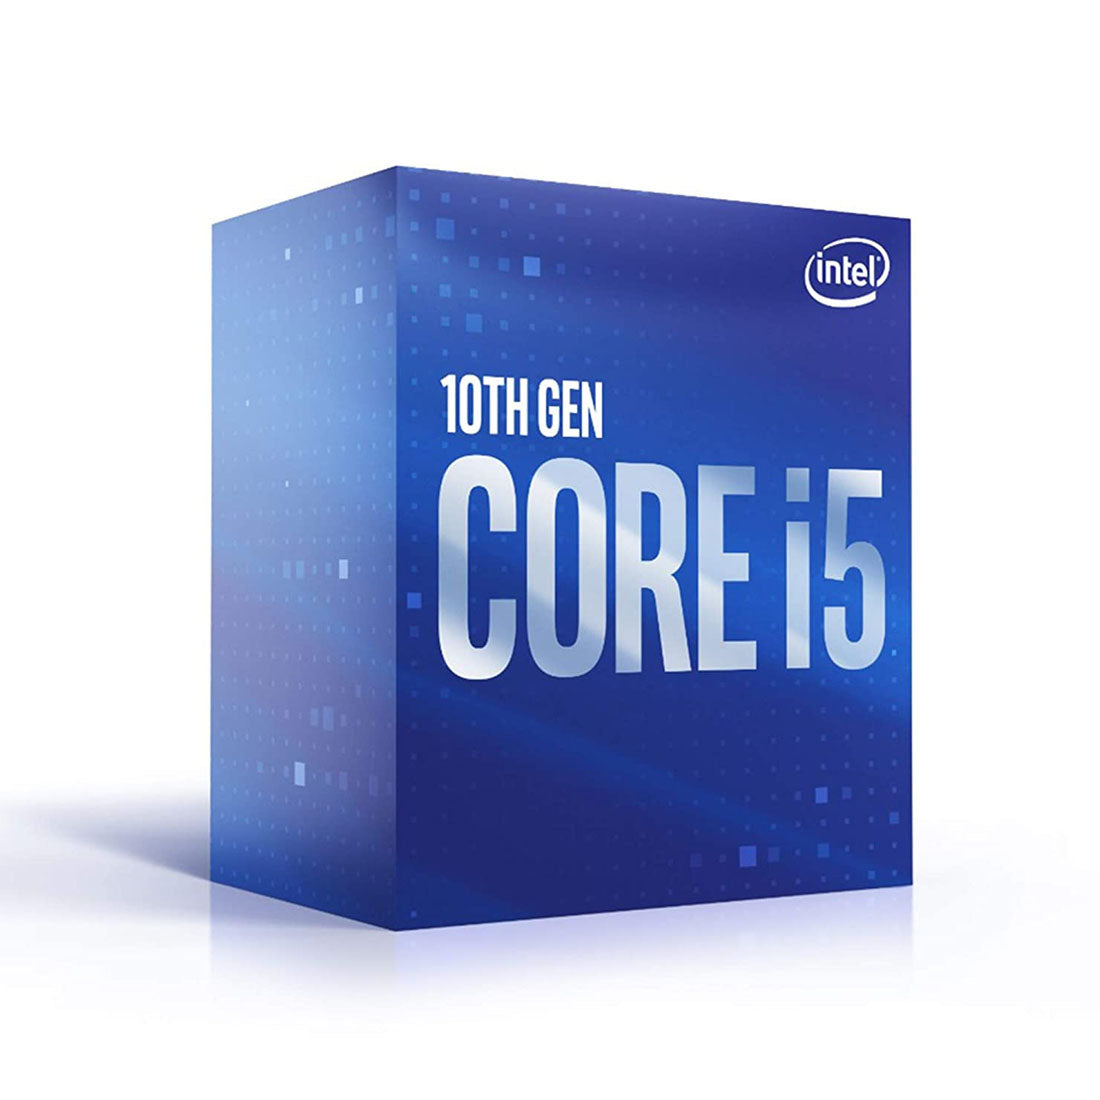 Intel Core i5-10400 LGA1200 Desktop Processor 6 Cores up to 4.30GHz 12MB Cache